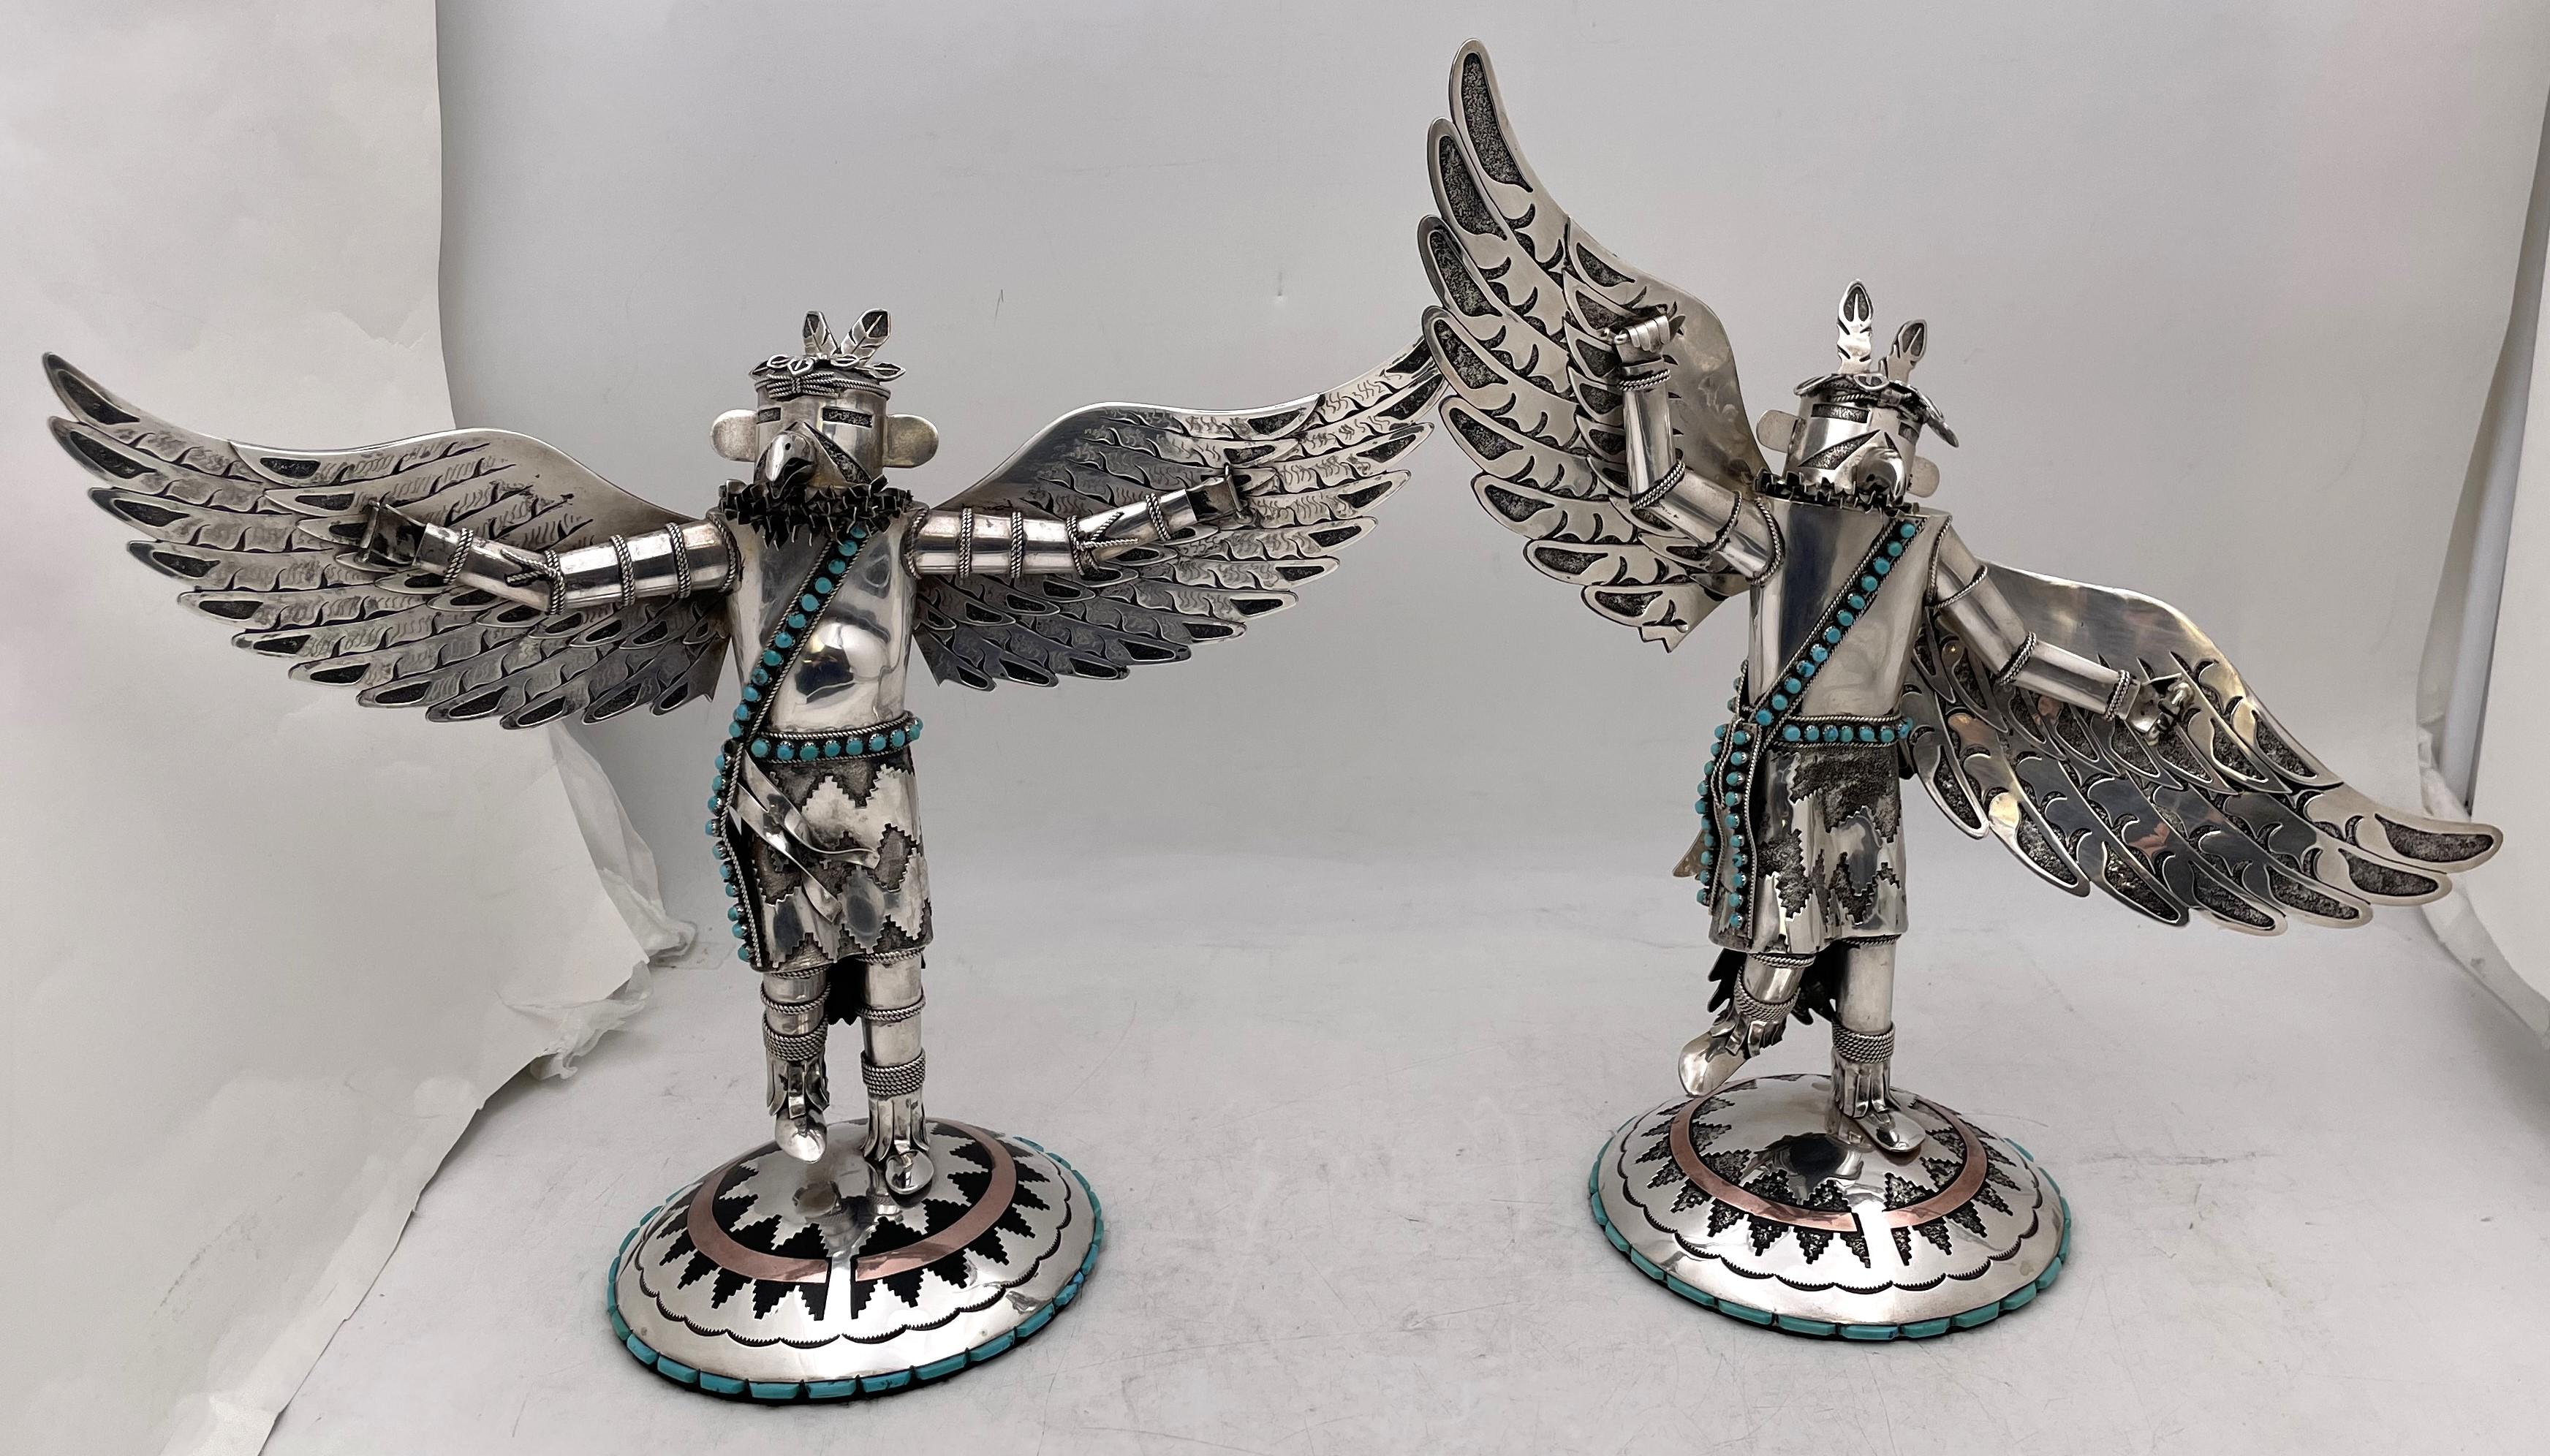 Rare Wilford Begay, Amérindien Navajo, paire de sculptures uniques en argent, cuivre et turquoise incrustée, représentant des figures d'oiseaux Kachina. Le plus grand mesure 14 3/4'' de hauteur et 5 7/8'' de diamètre à la base, tandis que le plus